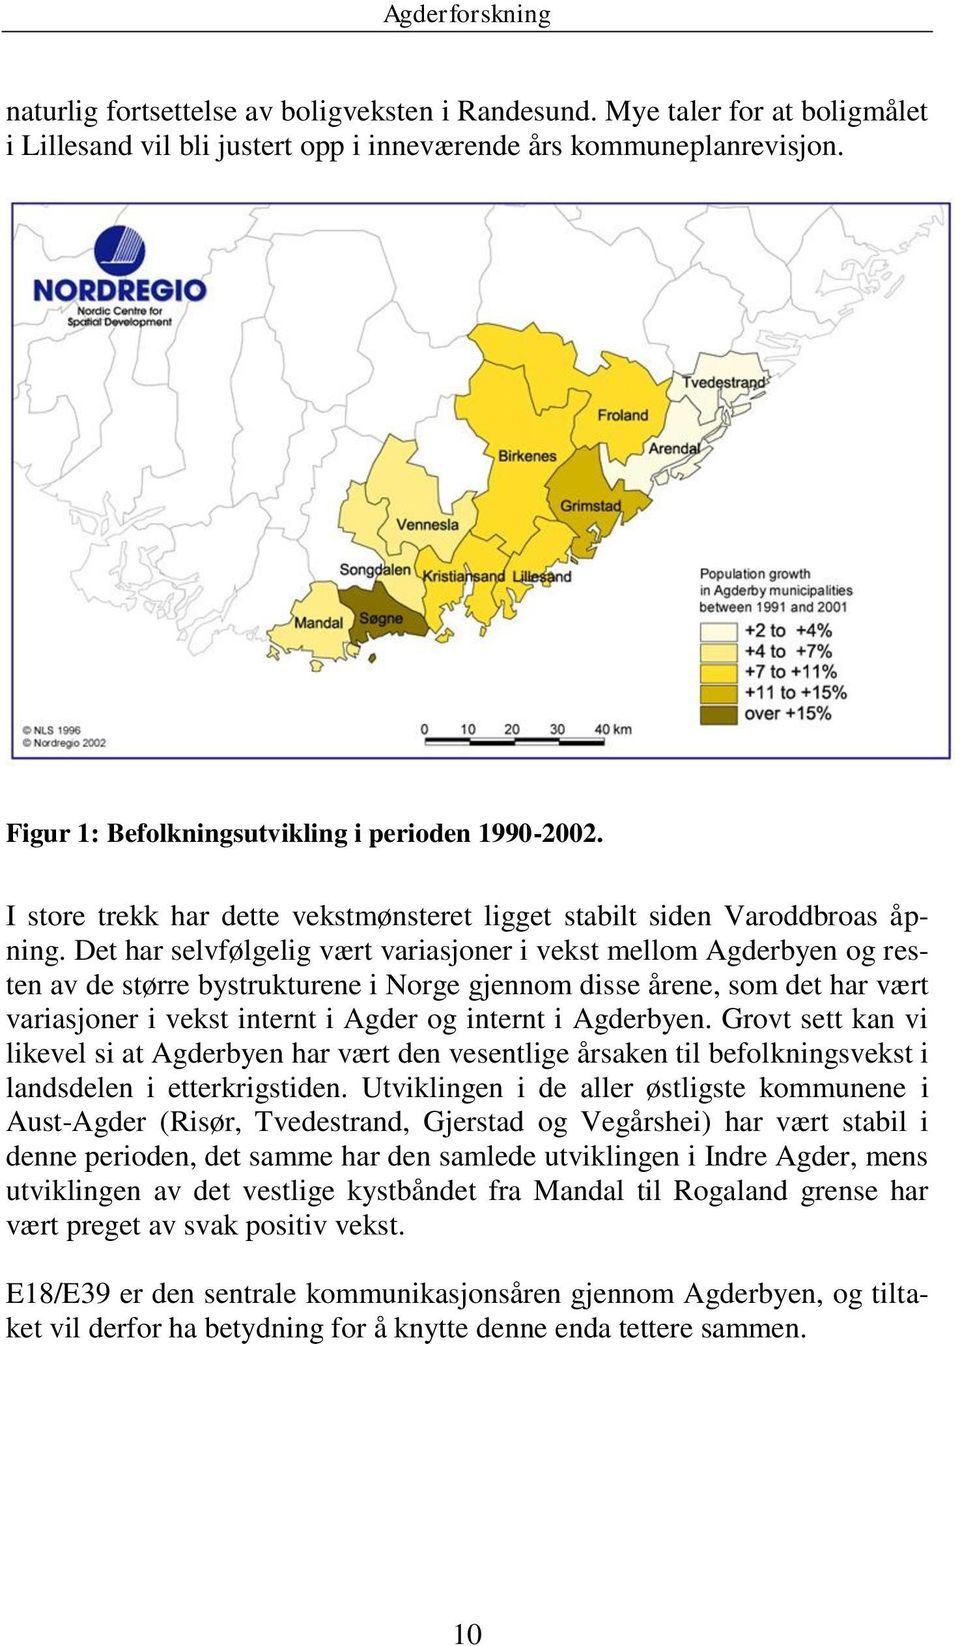 Det har selvfølgelig vært variasjoner i vekst mellom Agderbyen og resten av de større bystrukturene i Norge gjennom disse årene, som det har vært variasjoner i vekst internt i Agder og internt i